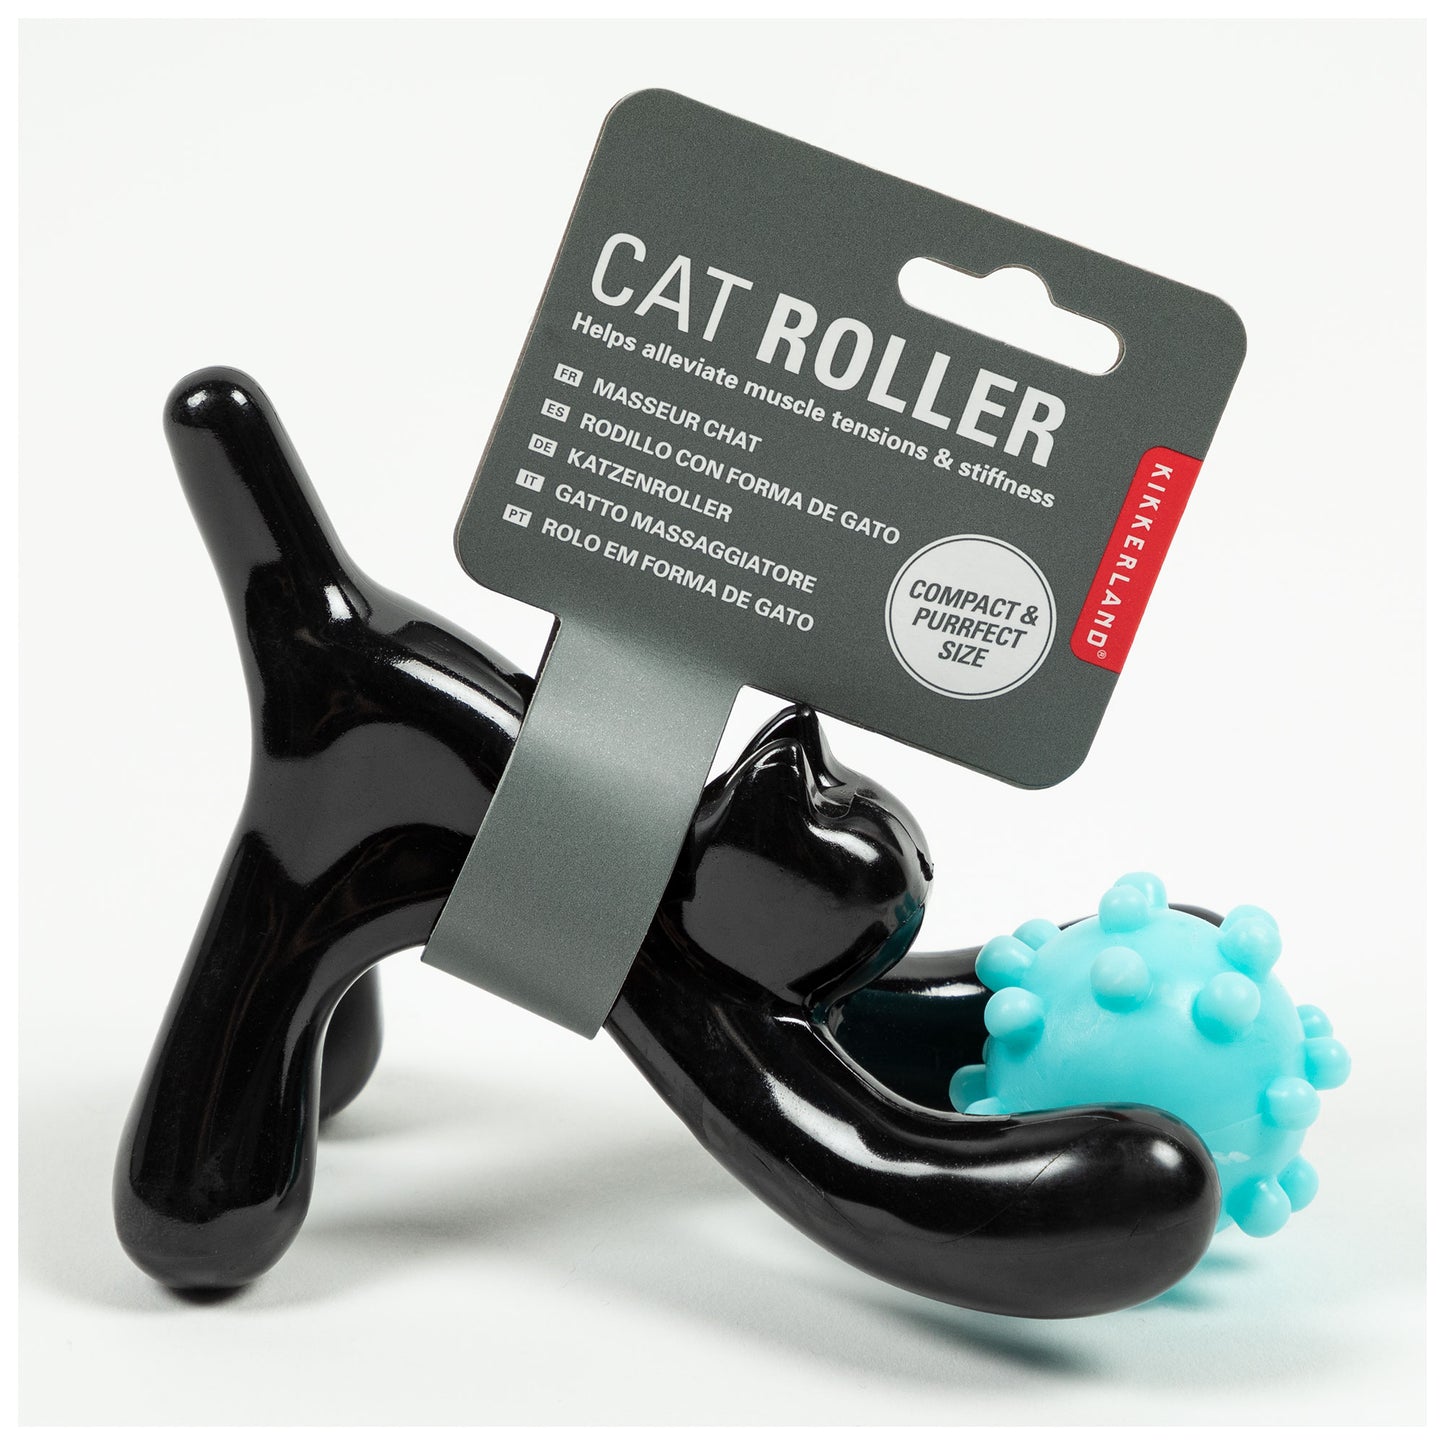 Cat Roller Massager